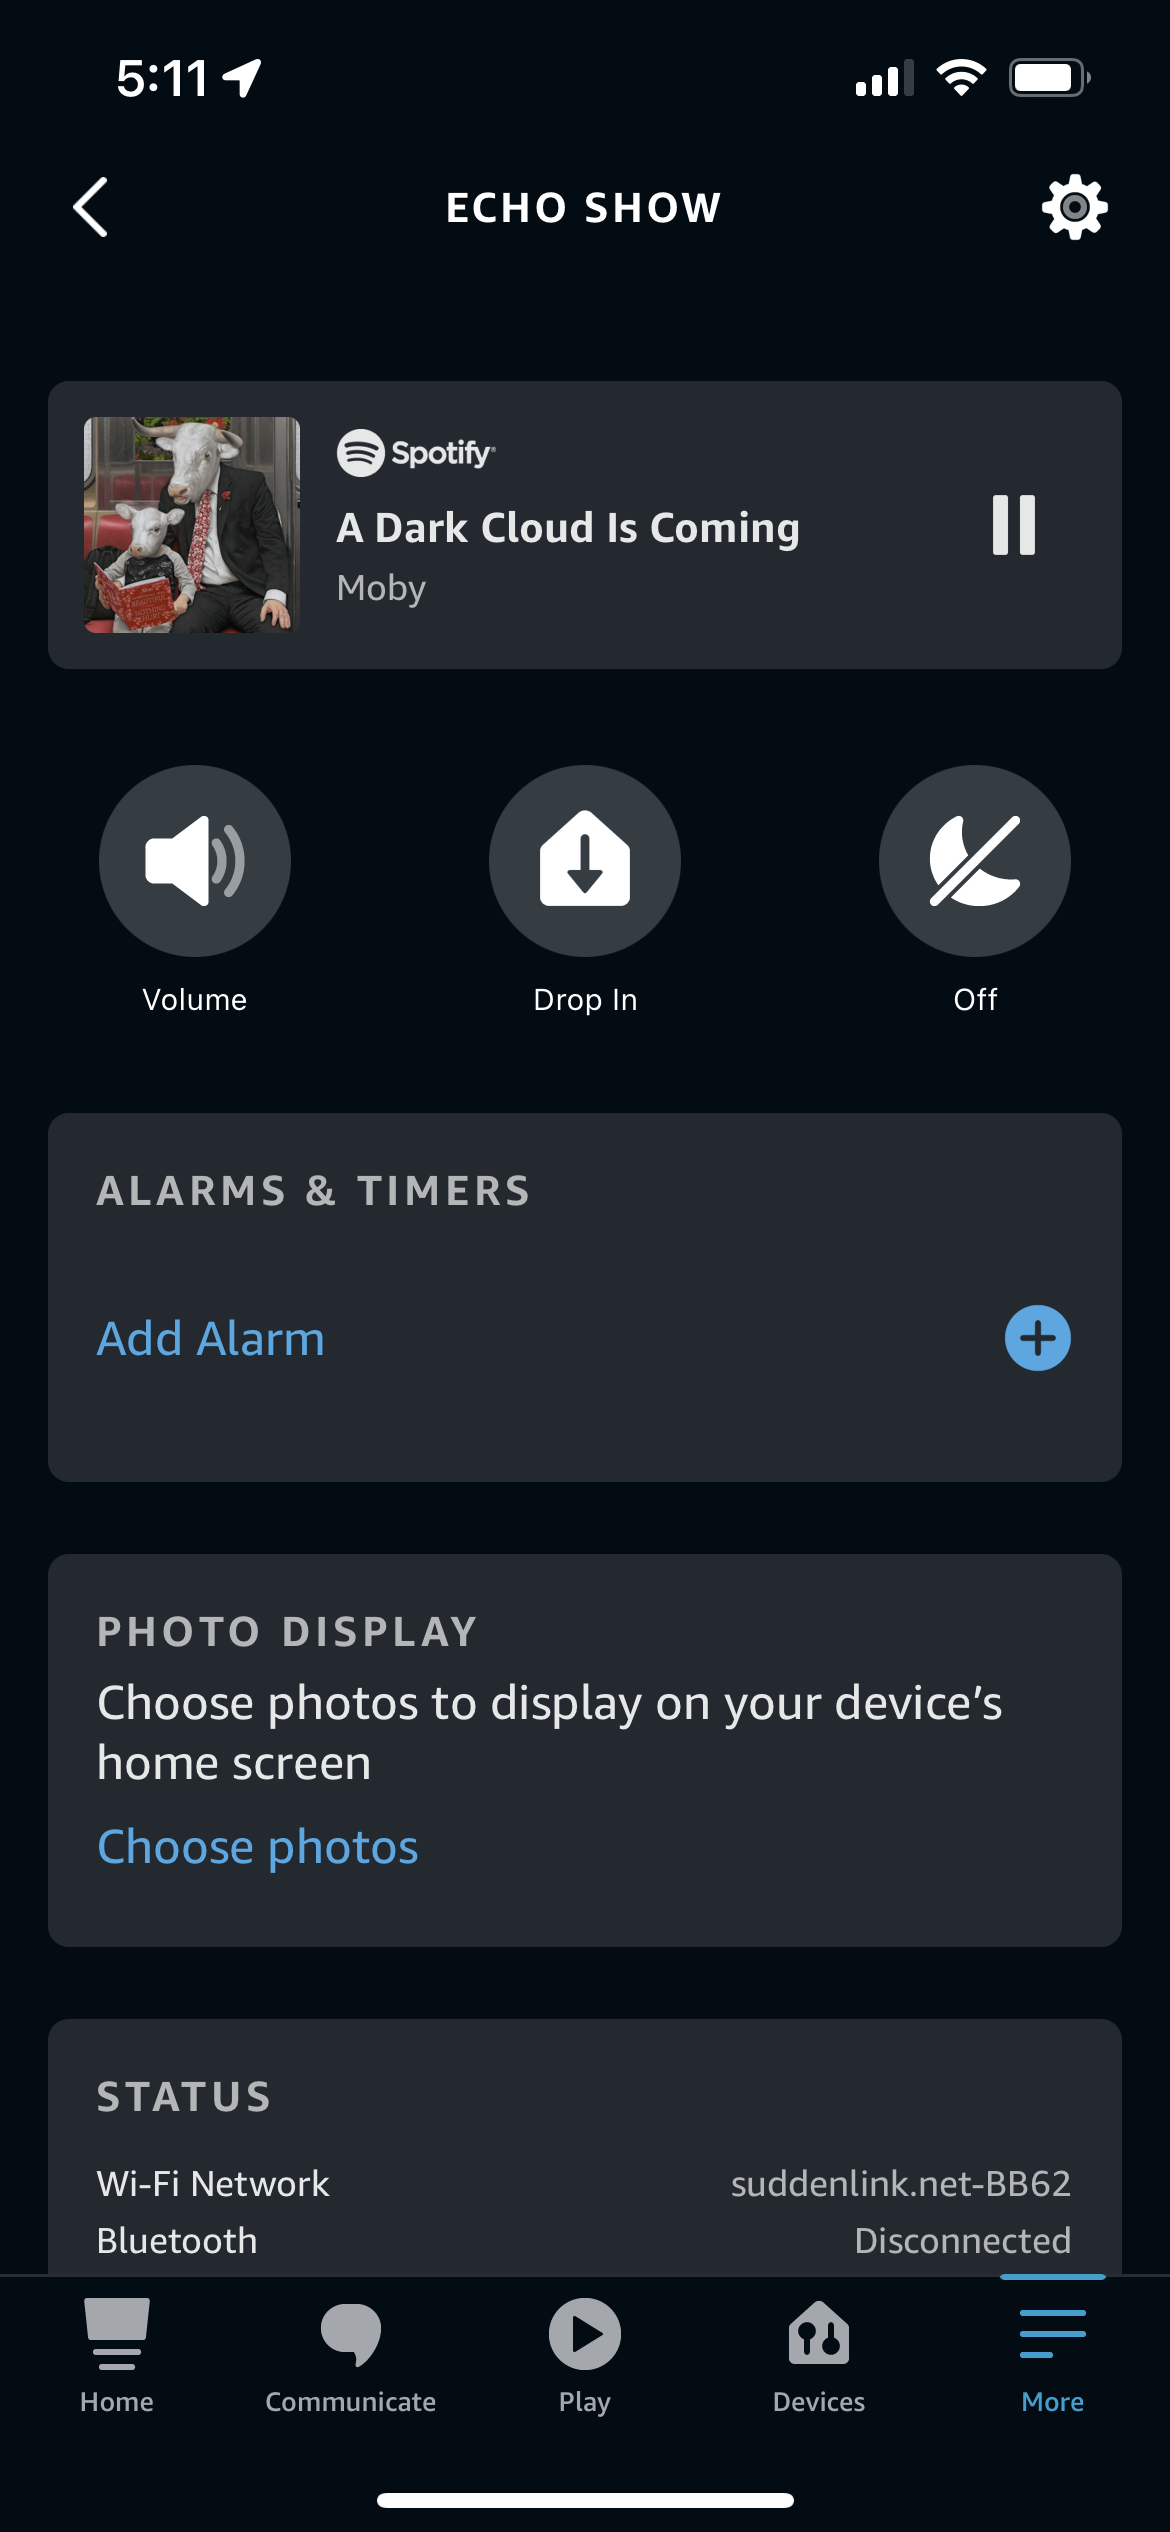 La página del dispositivo para un Echo Show en la aplicación Alexa